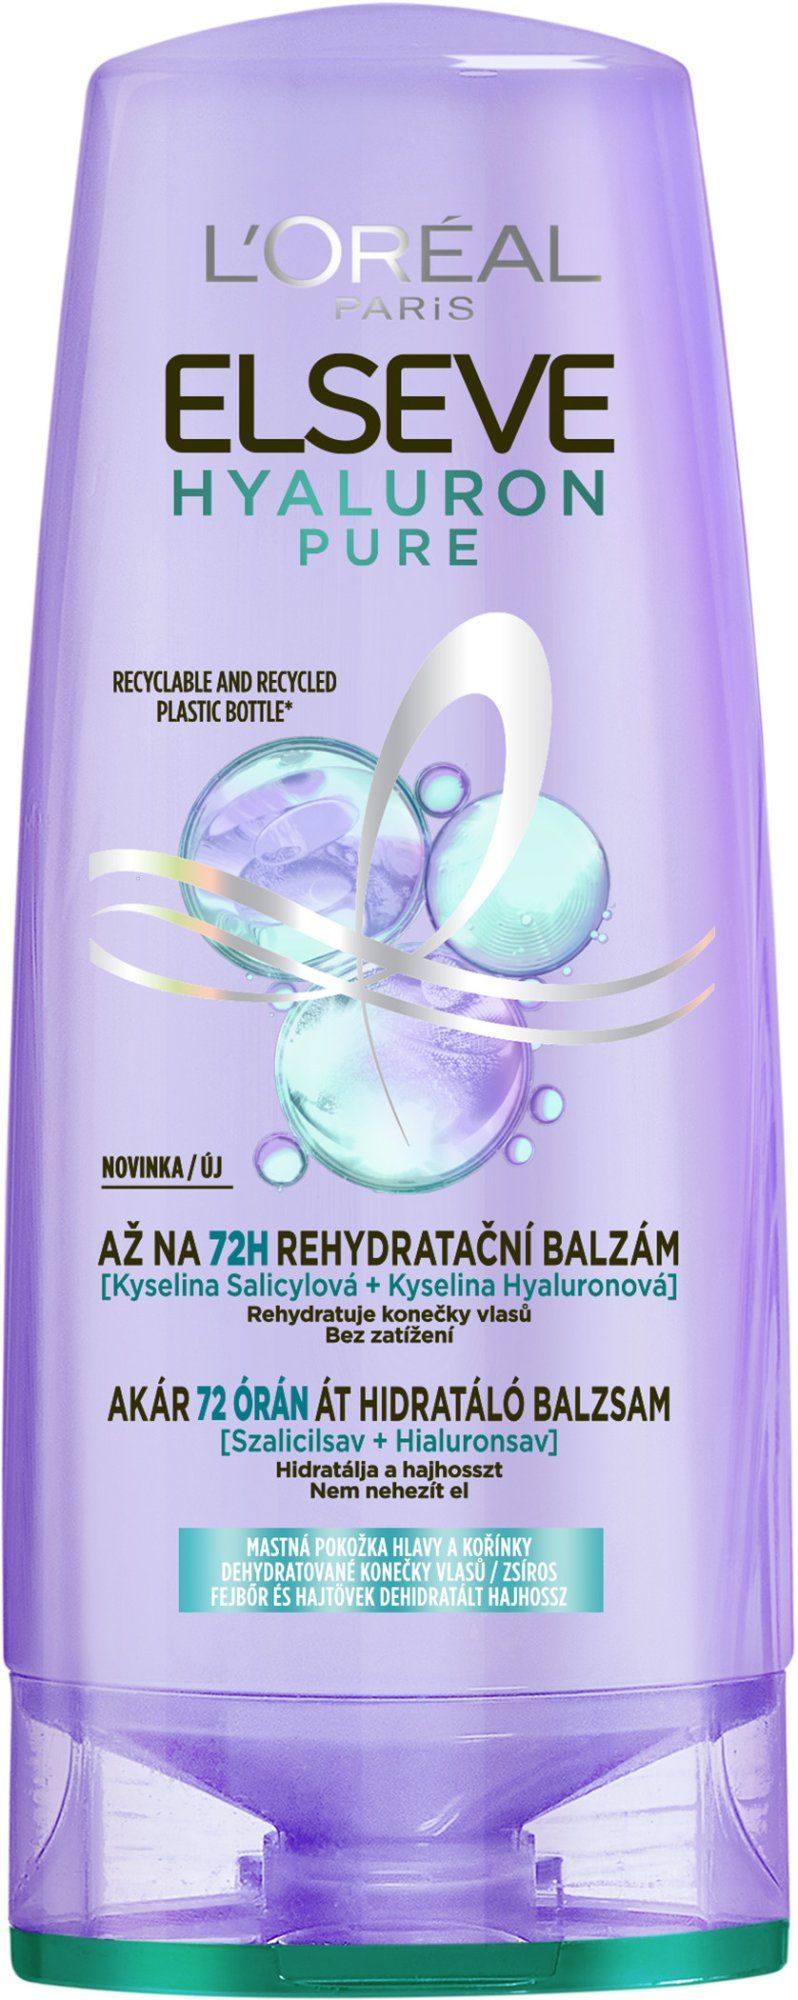 L'Oréal Paris Elseve Hyaluron Pure balzám, 200 ml